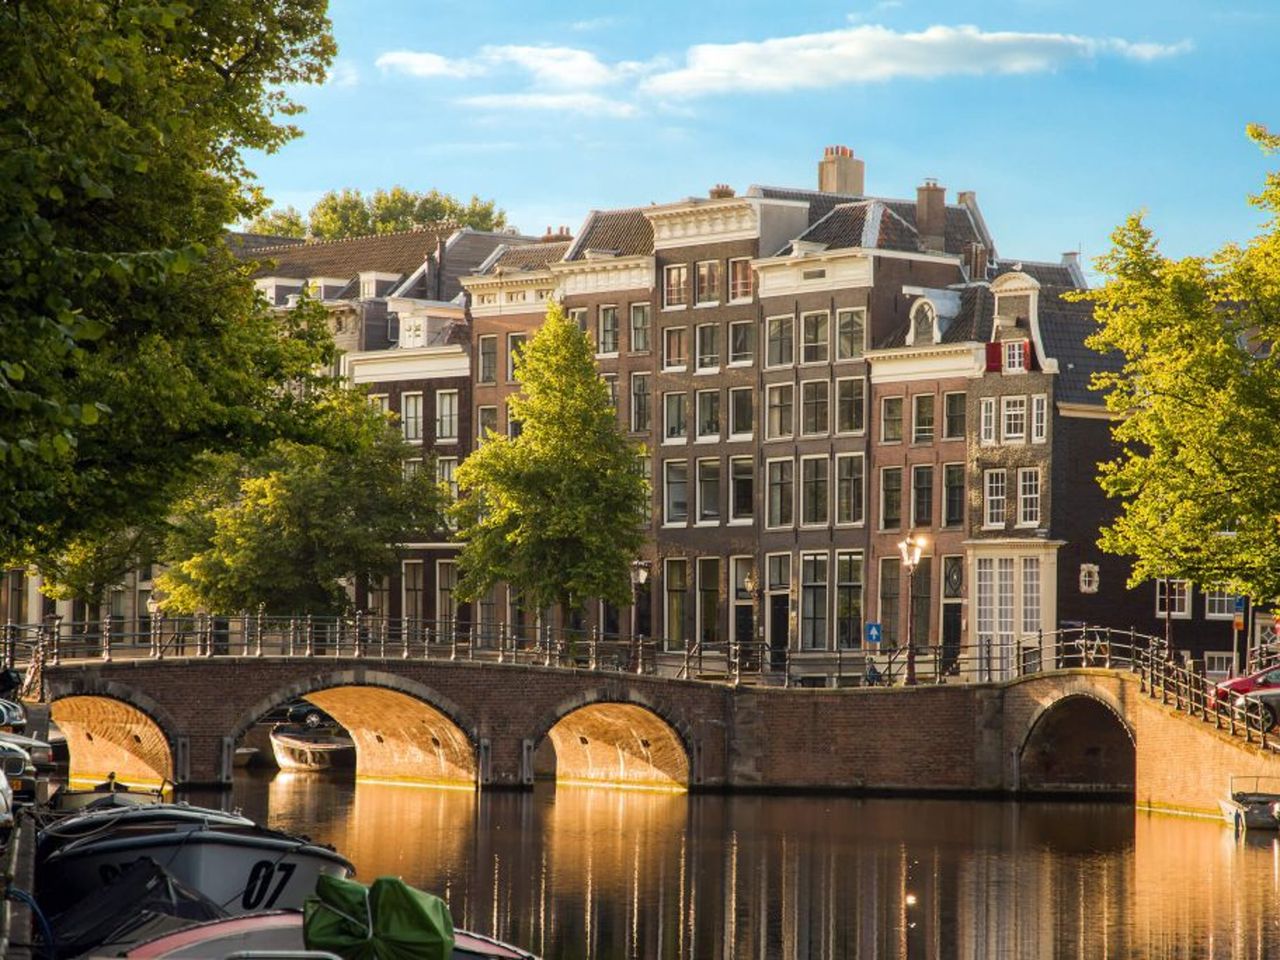 Неповторимый Амстердам | Цена 500€, отзывы, описание экскурсии